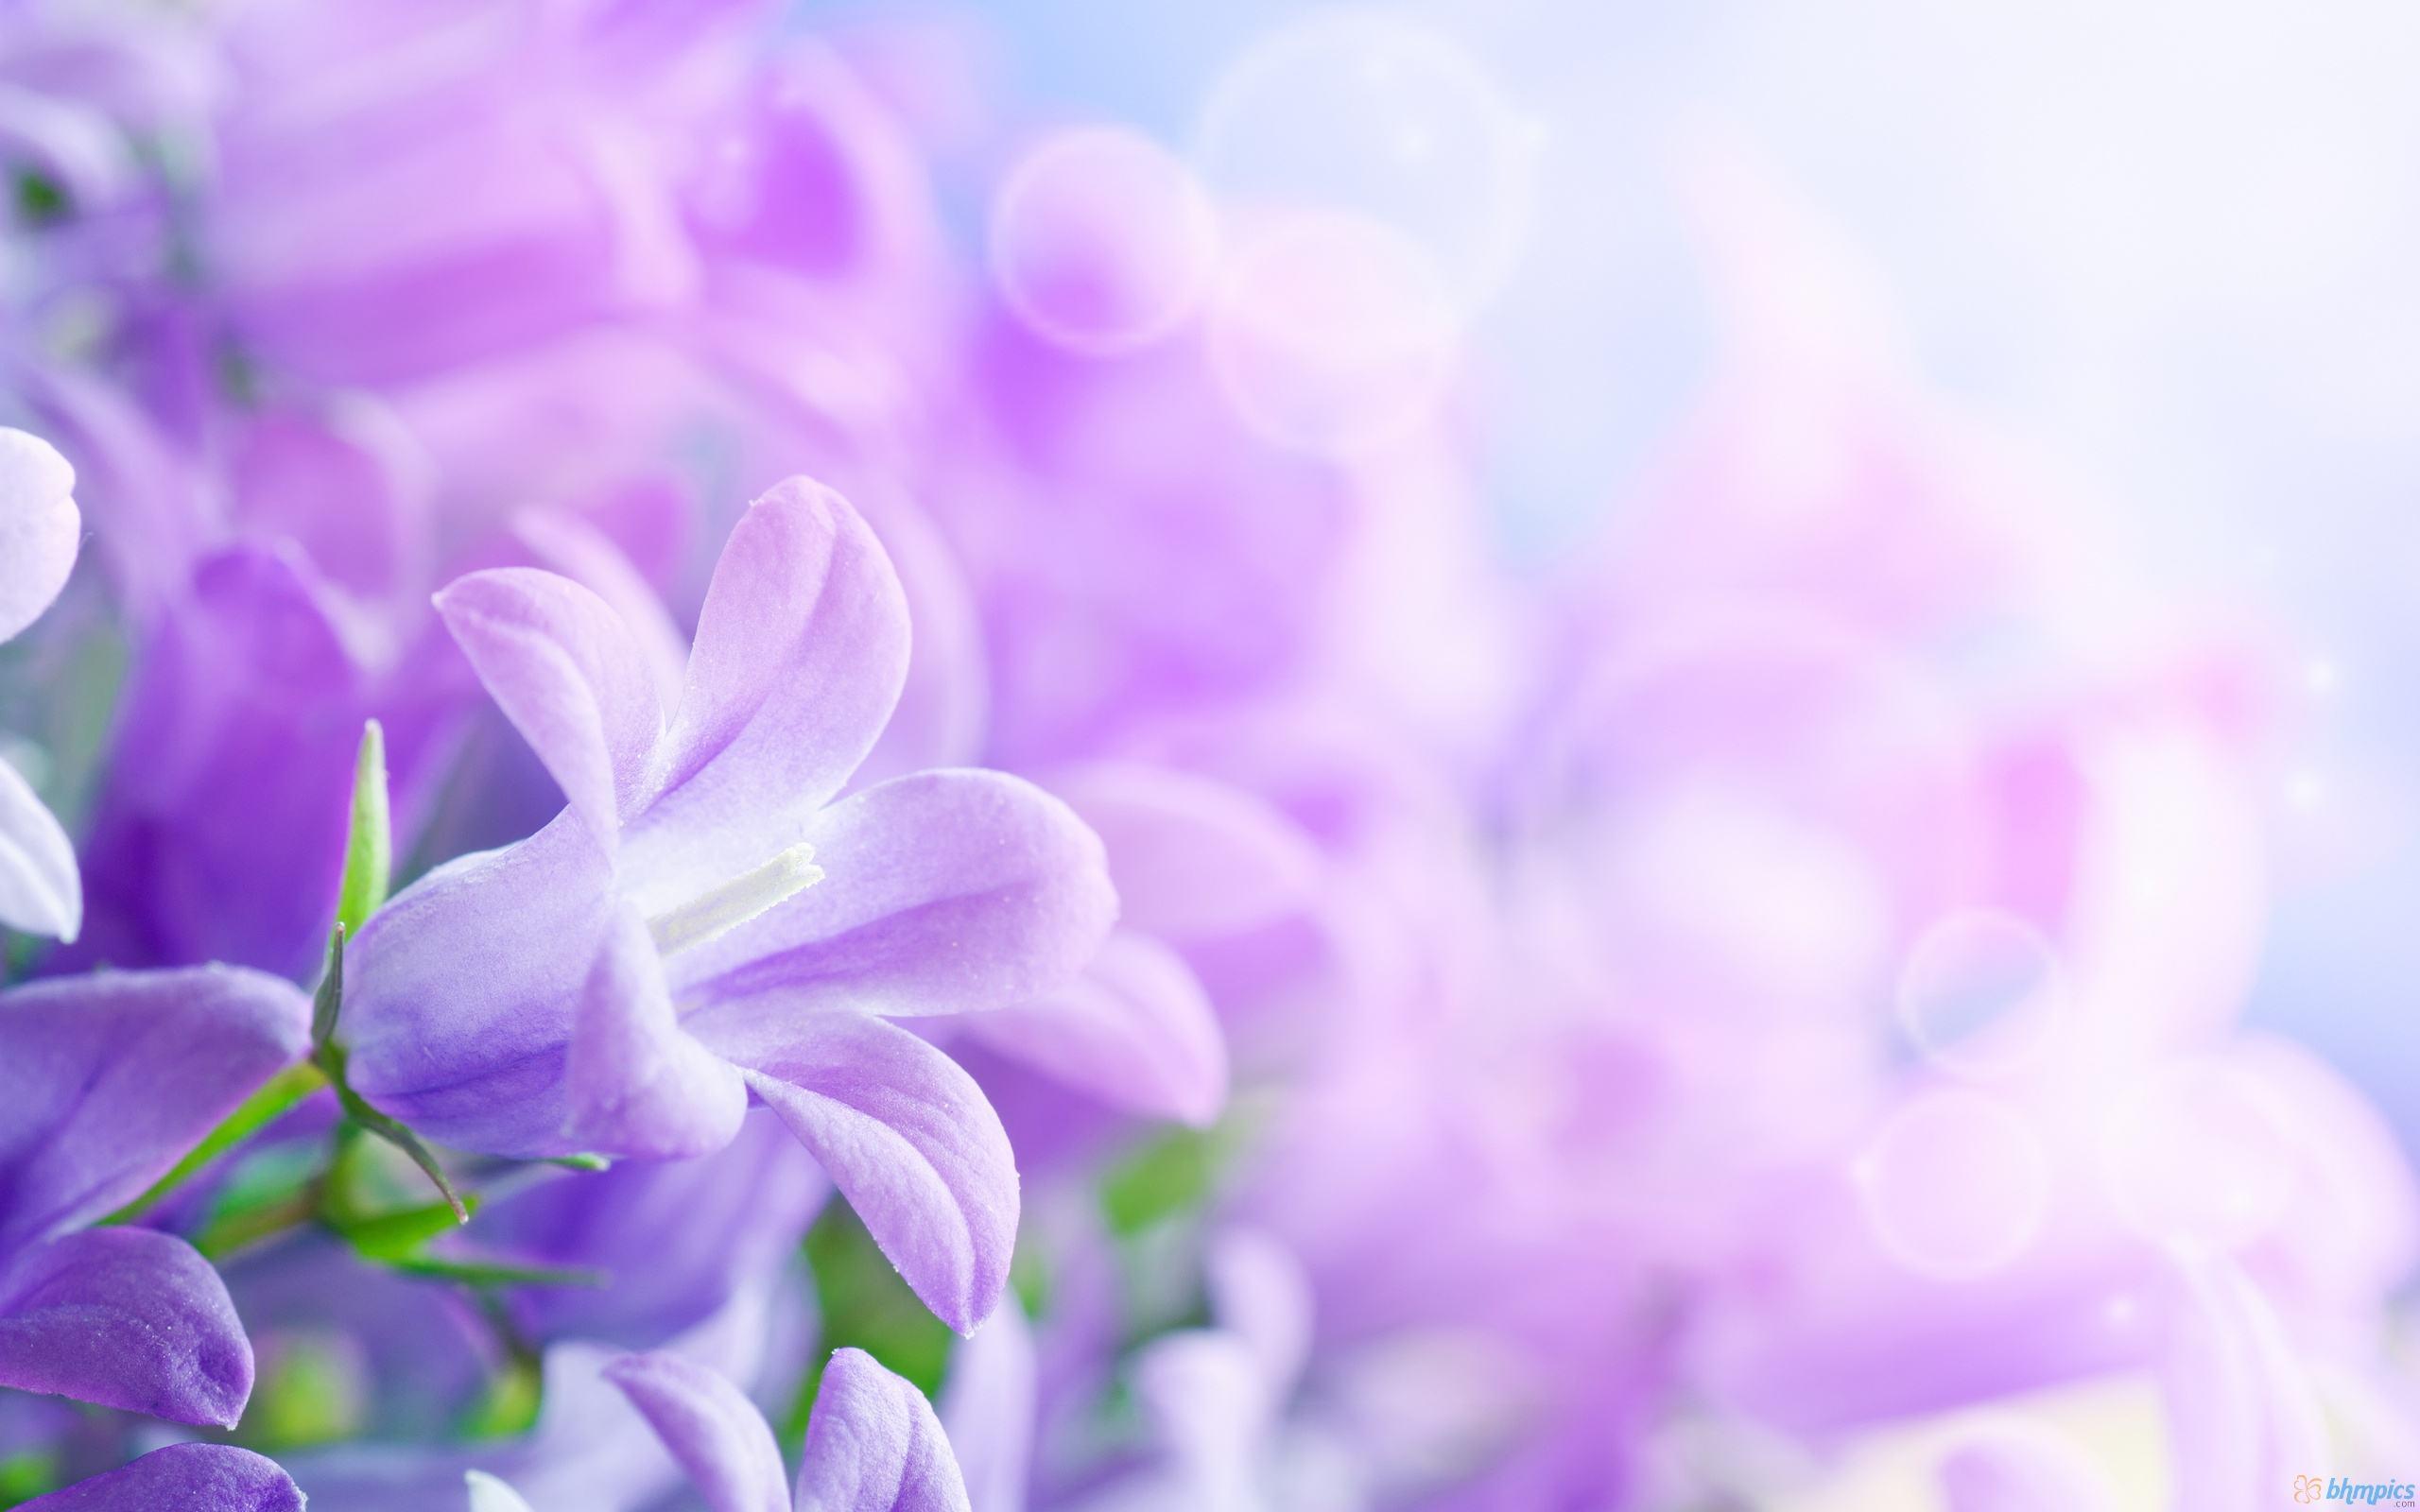 Violet Flower Wallpapers - Top Free Violet Flower Backgrounds